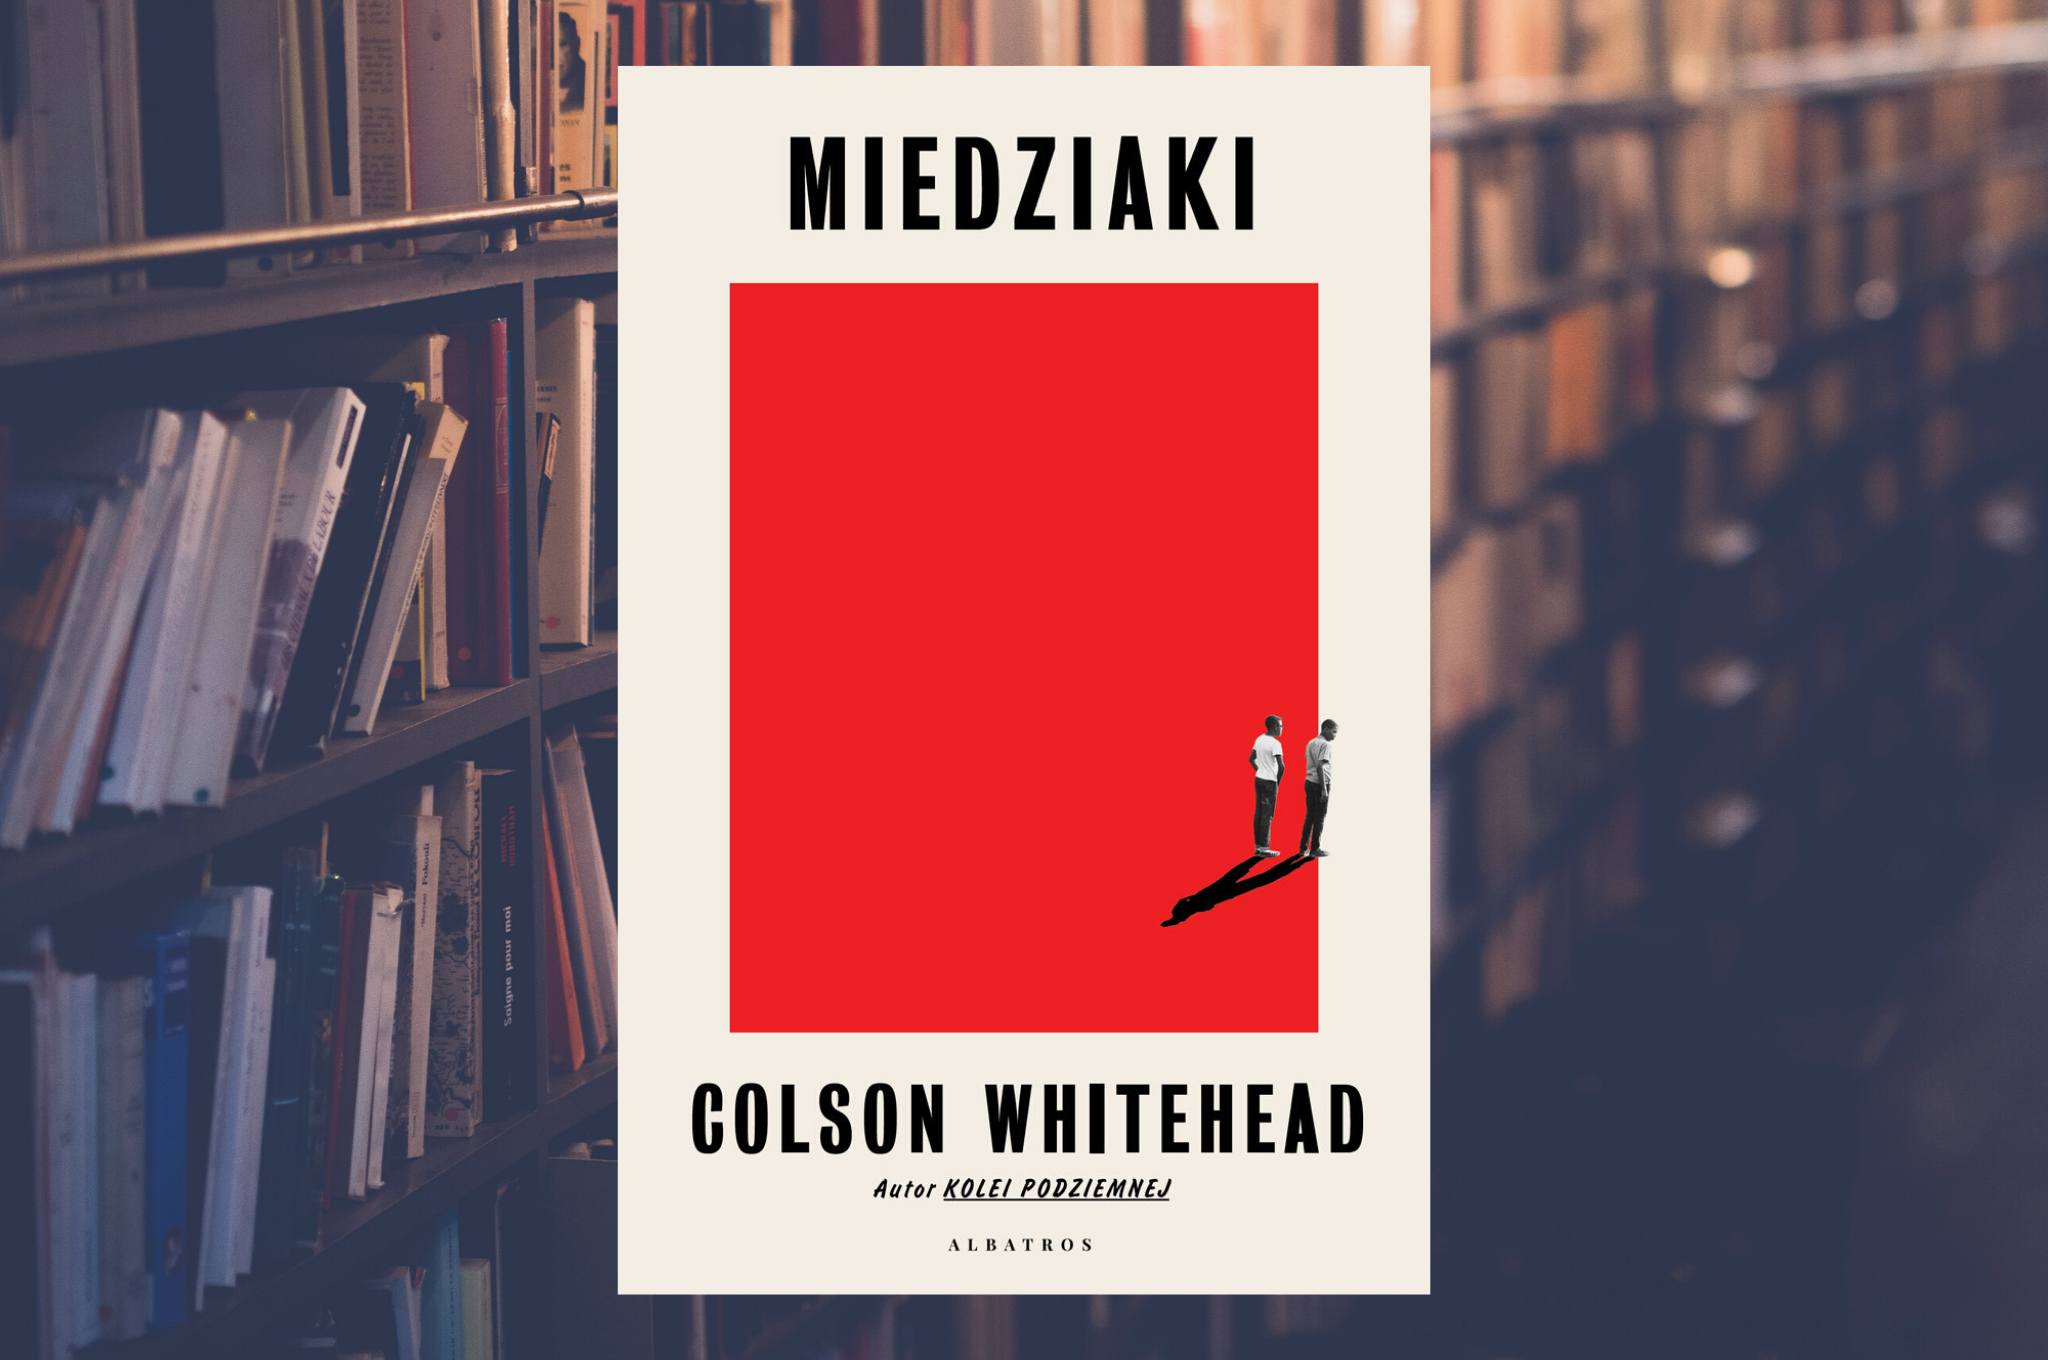 COLSON WHITEHEAD "MIEDZIAKI"